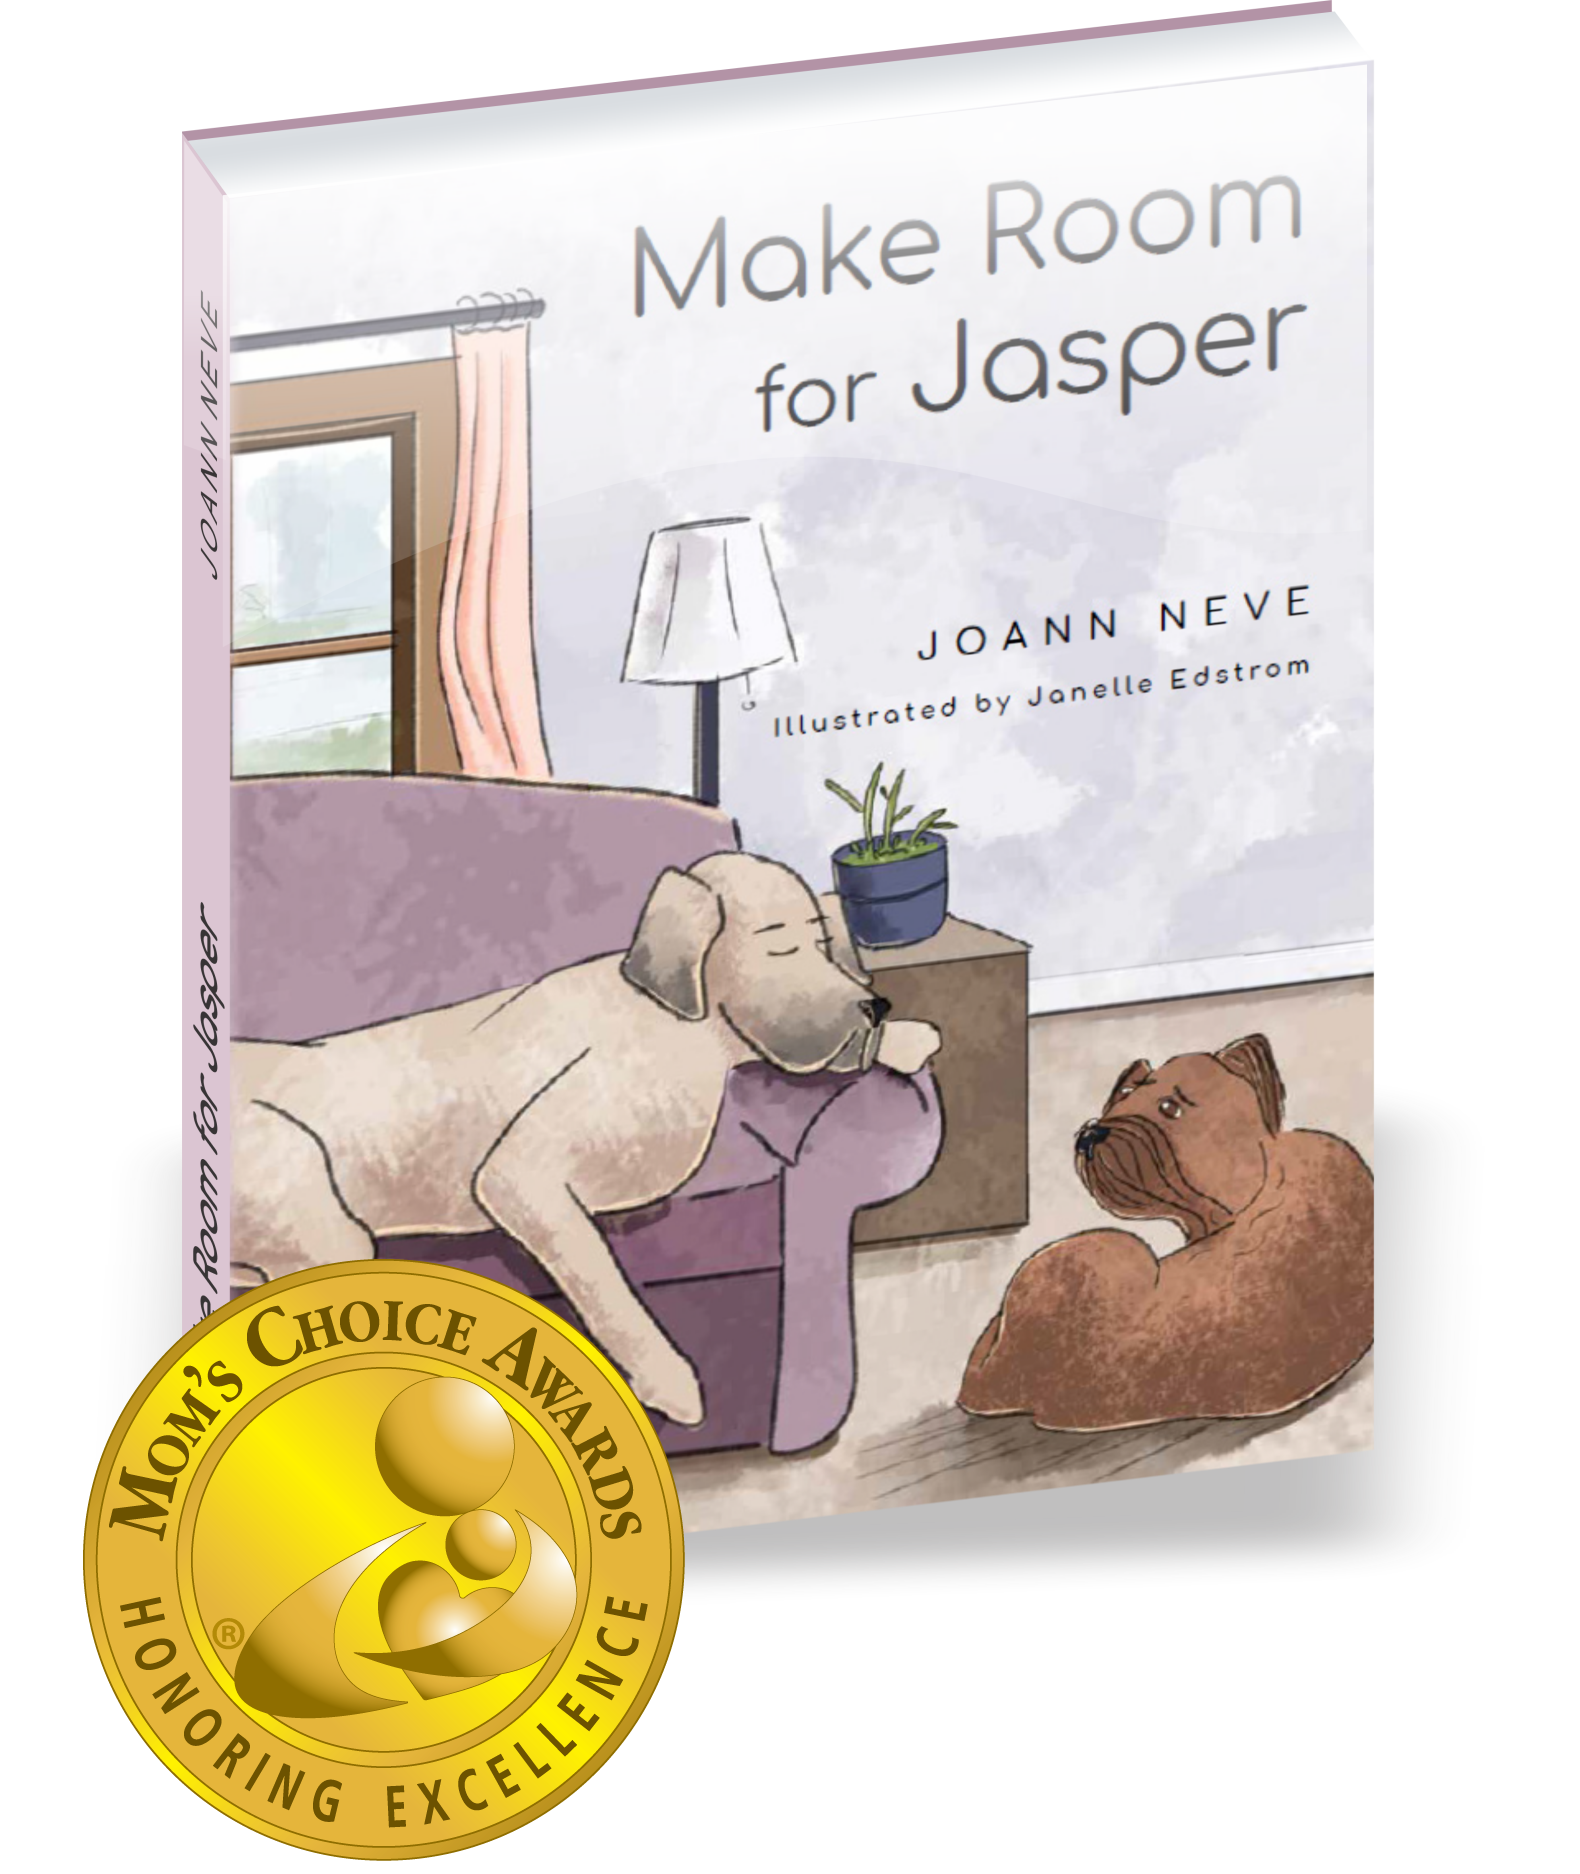 Make Room for Jasper